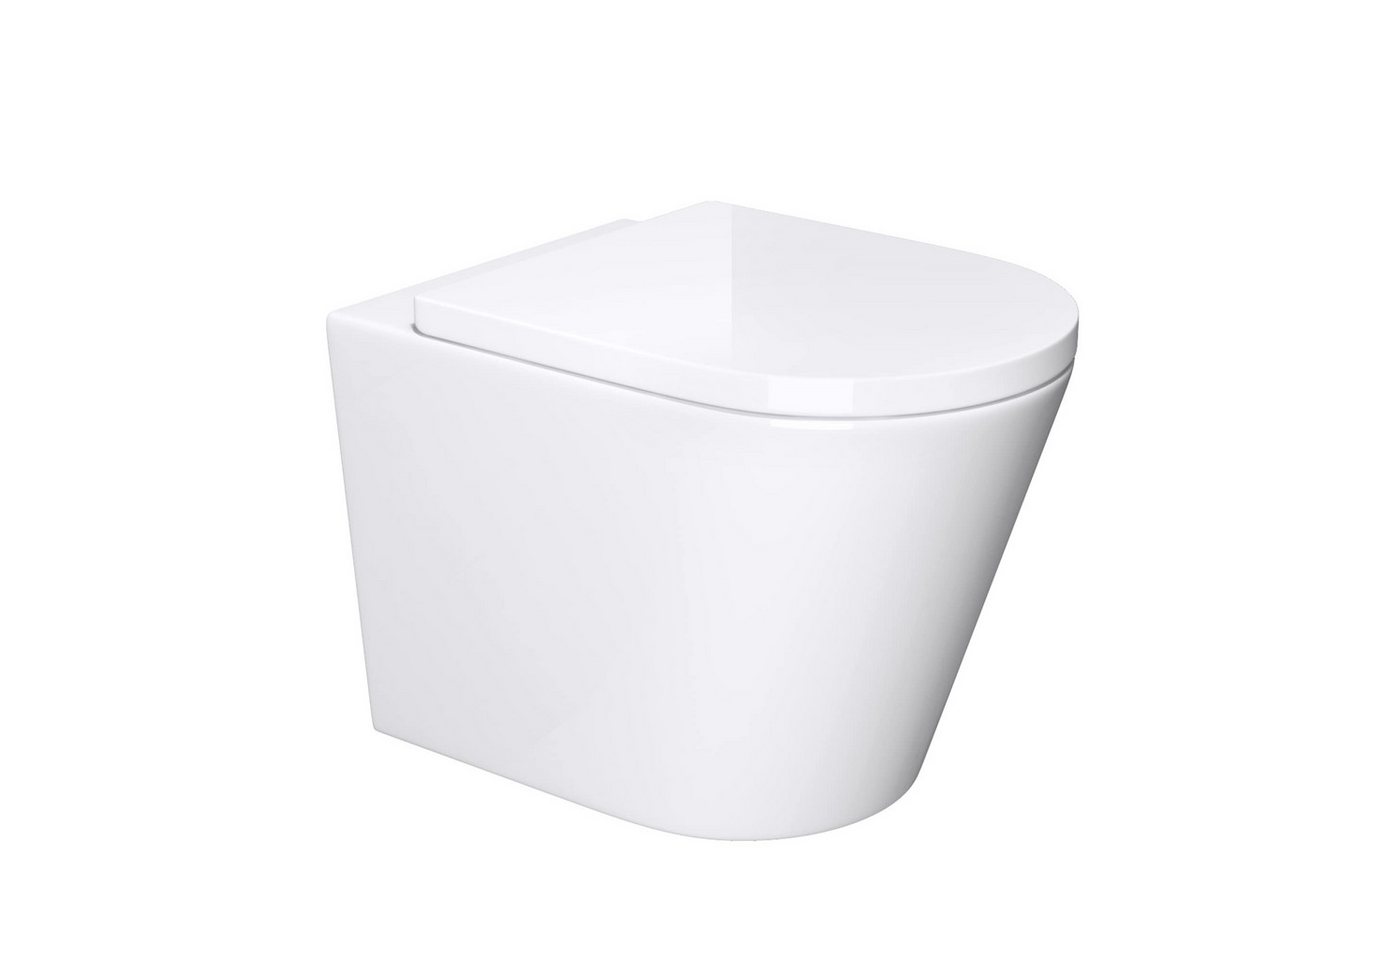 Mai & Mai Tiefspül-WC Hänge-WC Keramik spülrandloses-WC Wandmontage inkl. Softclose Sitz, wandhängend, inklusive WC-Sitz von Mai & Mai